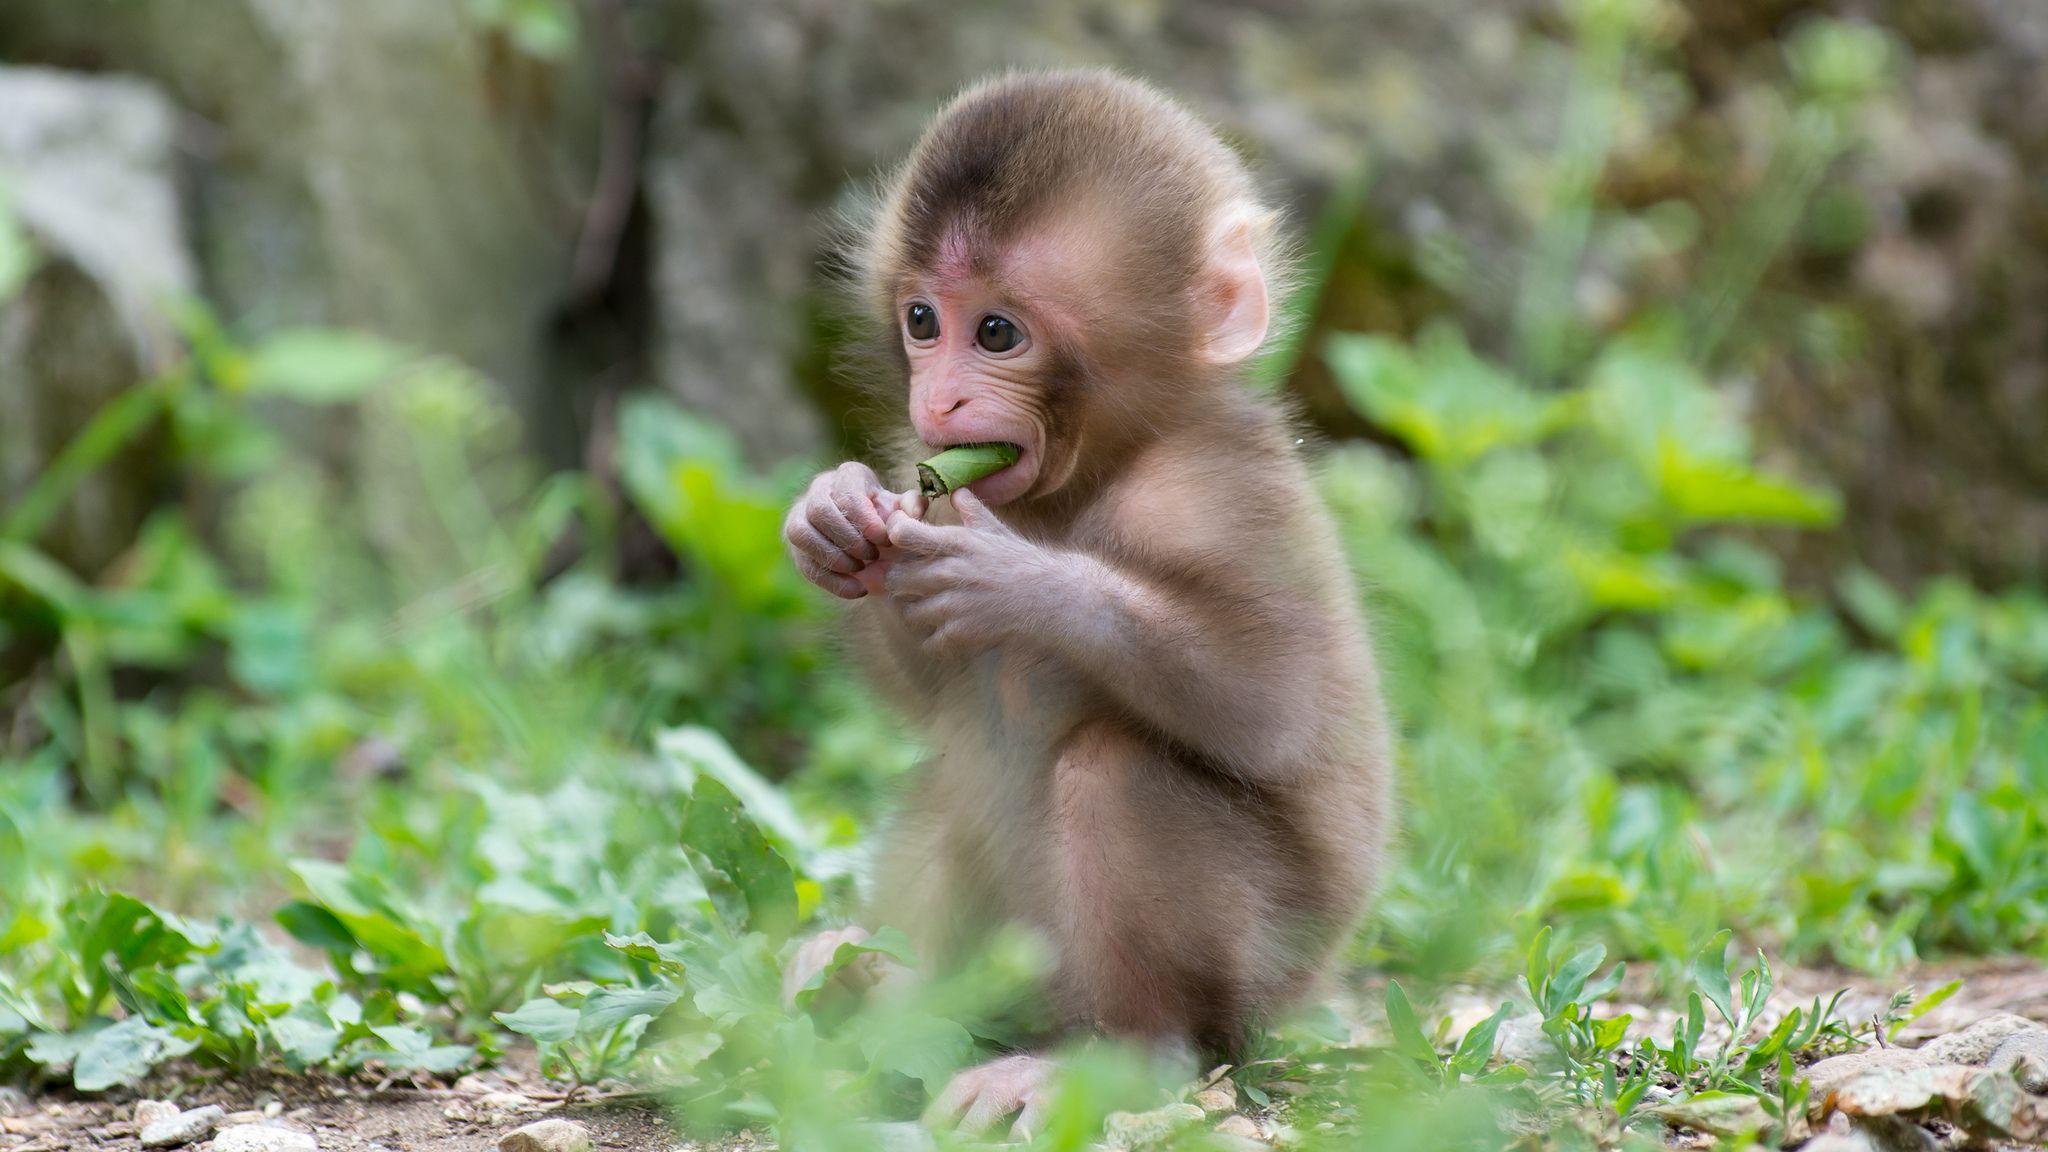 Cute Baby Monkeys Wallpaper